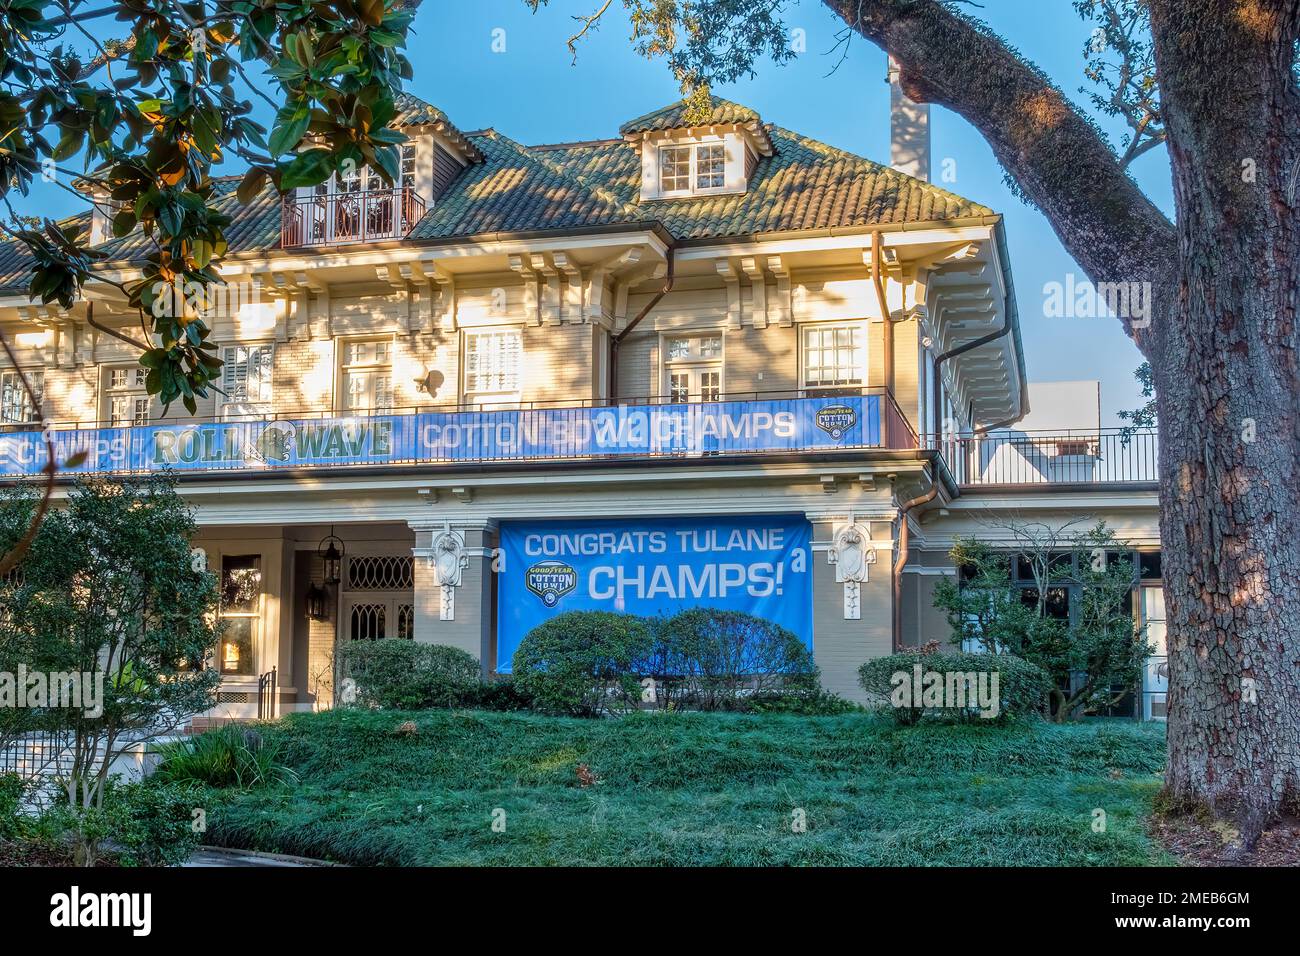 NEW ORLEANS, LA, USA - 22 GENNAIO 2023: Davanti a St Charles Avenue Mansion decorato per celebrare la vittoria Tulane Green Wave nella Cotton Bowl Foto Stock